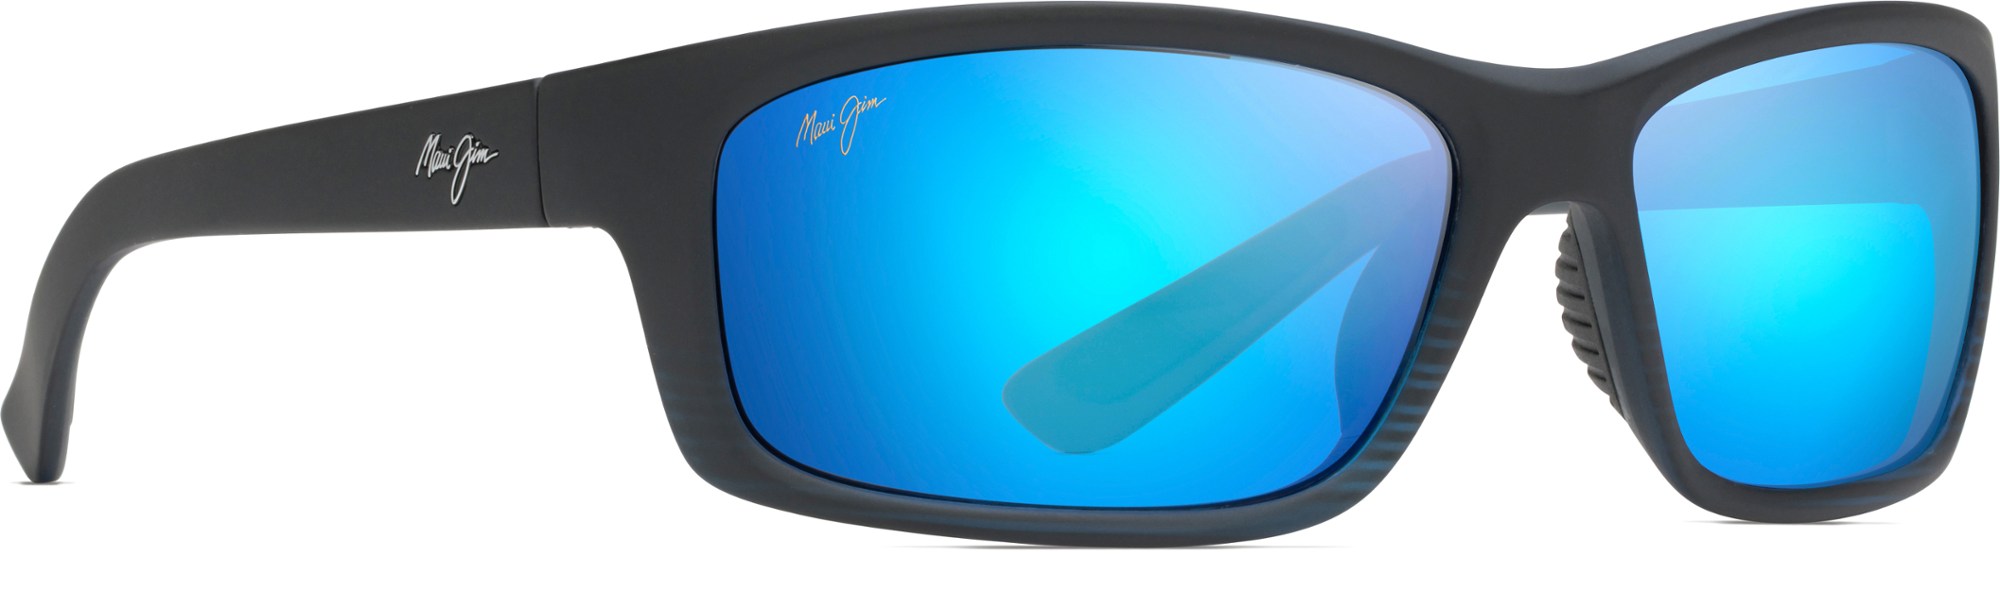 цена Поляризованные солнцезащитные очки Kanaio Coast Maui Jim, синий